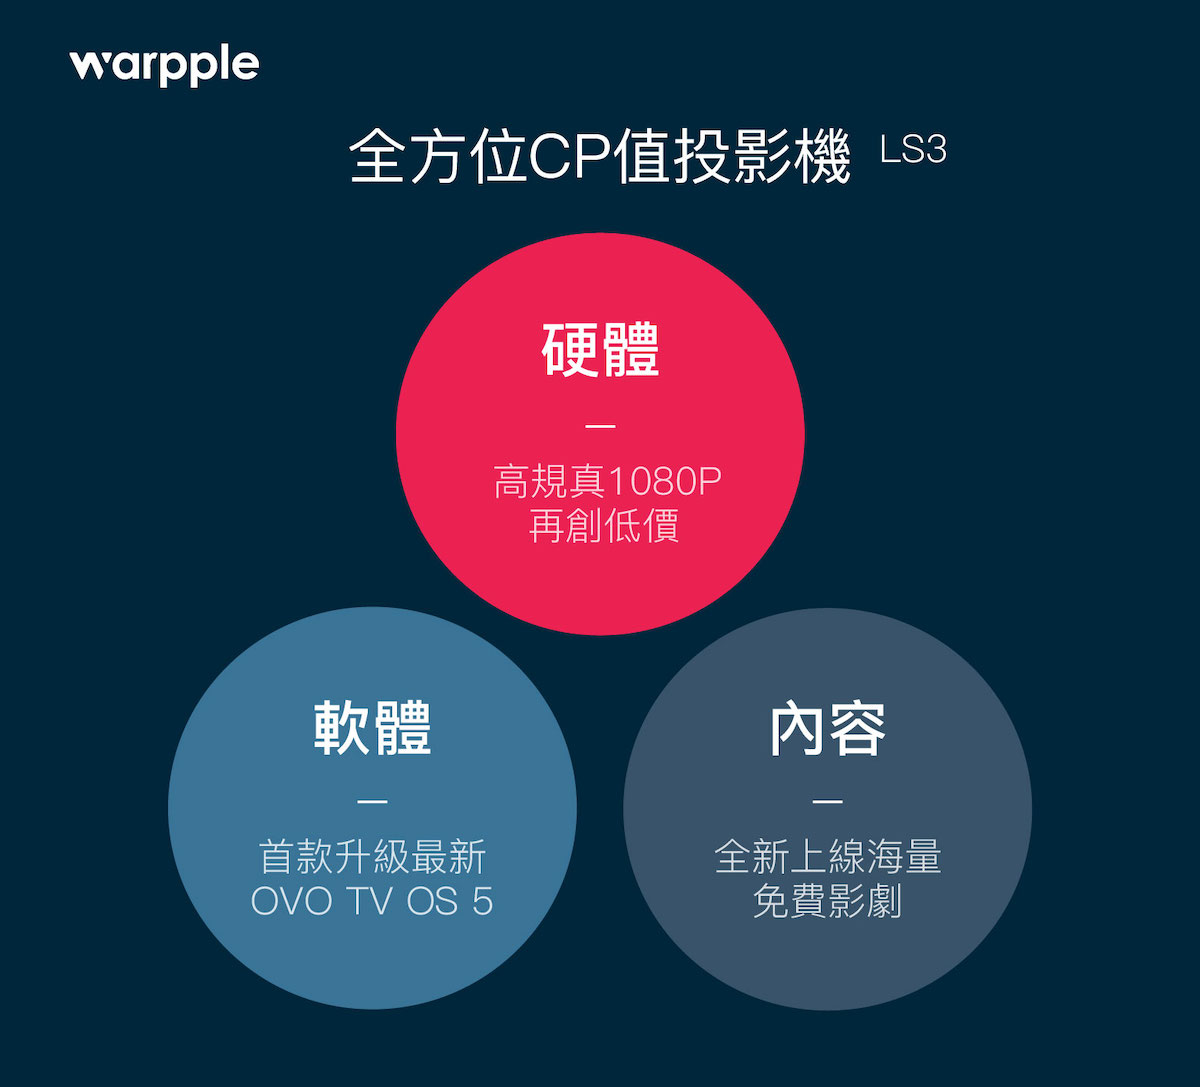 OVO, Warpple 不講武德「全方位 CP 值」智慧投影機 LS3 僅 3,999 元